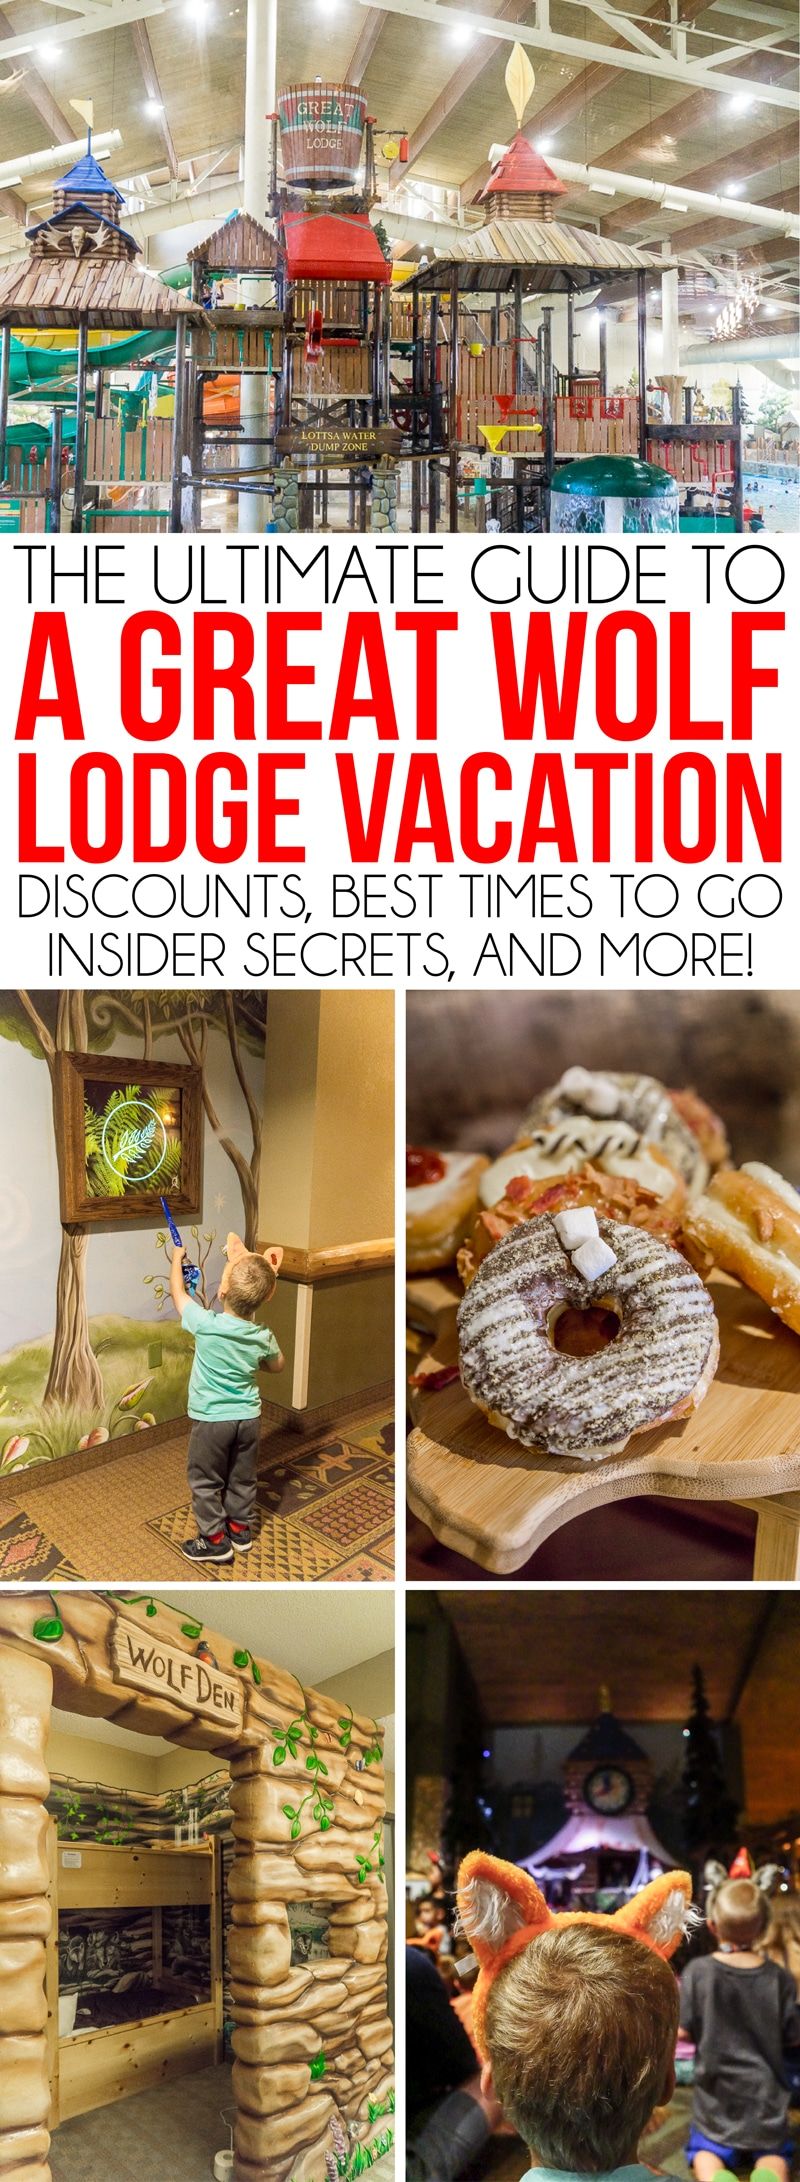 Το Great Wolf Lodge Grapevine είναι ιδανικό για οικογένειες με παιδιά όλων των ηλικιών